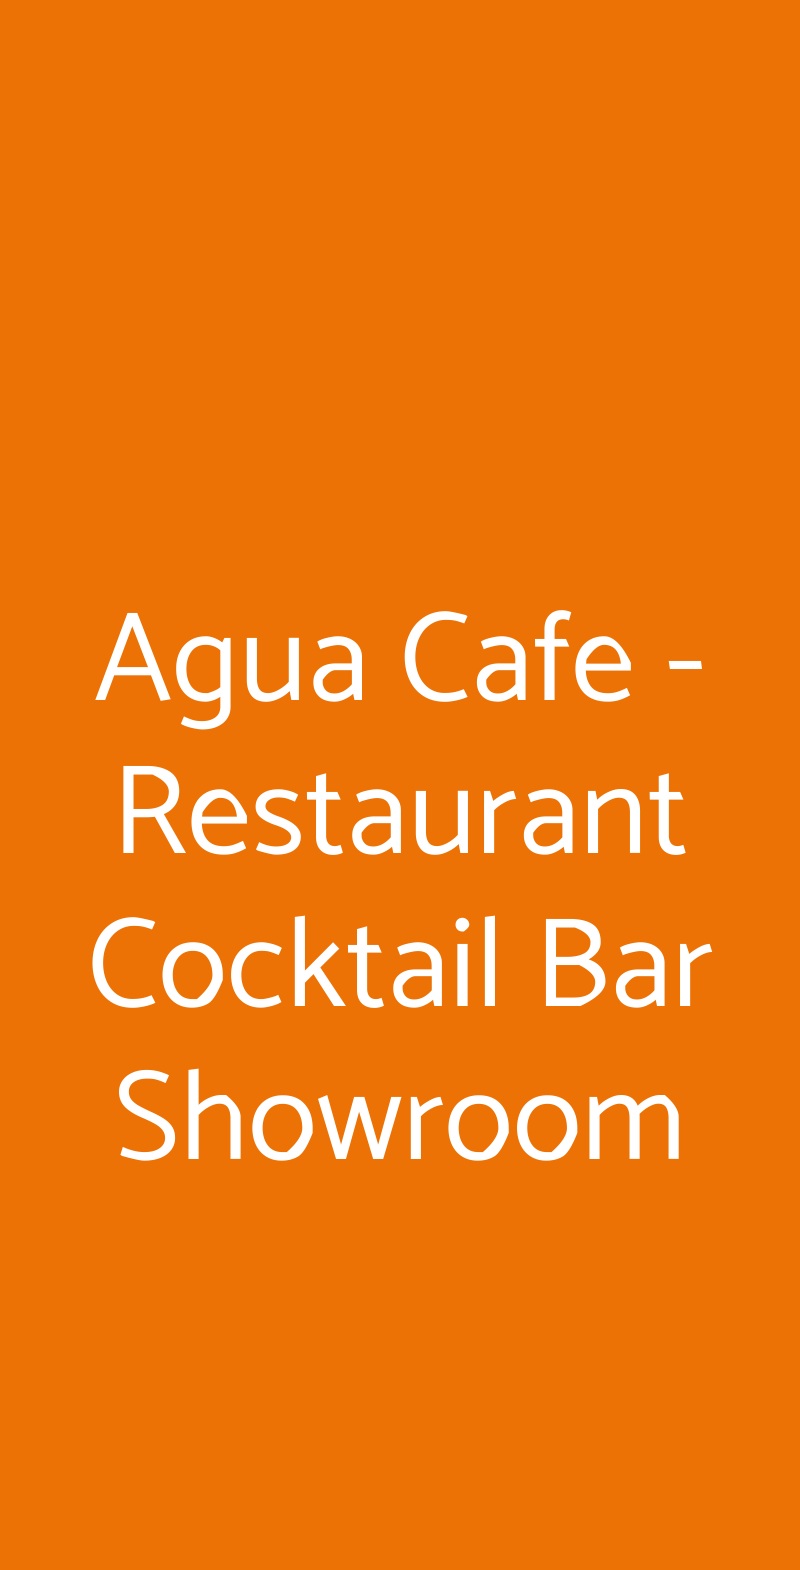 Agua Cafe - Restaurant Cocktail Bar Showroom Bologna menù 1 pagina